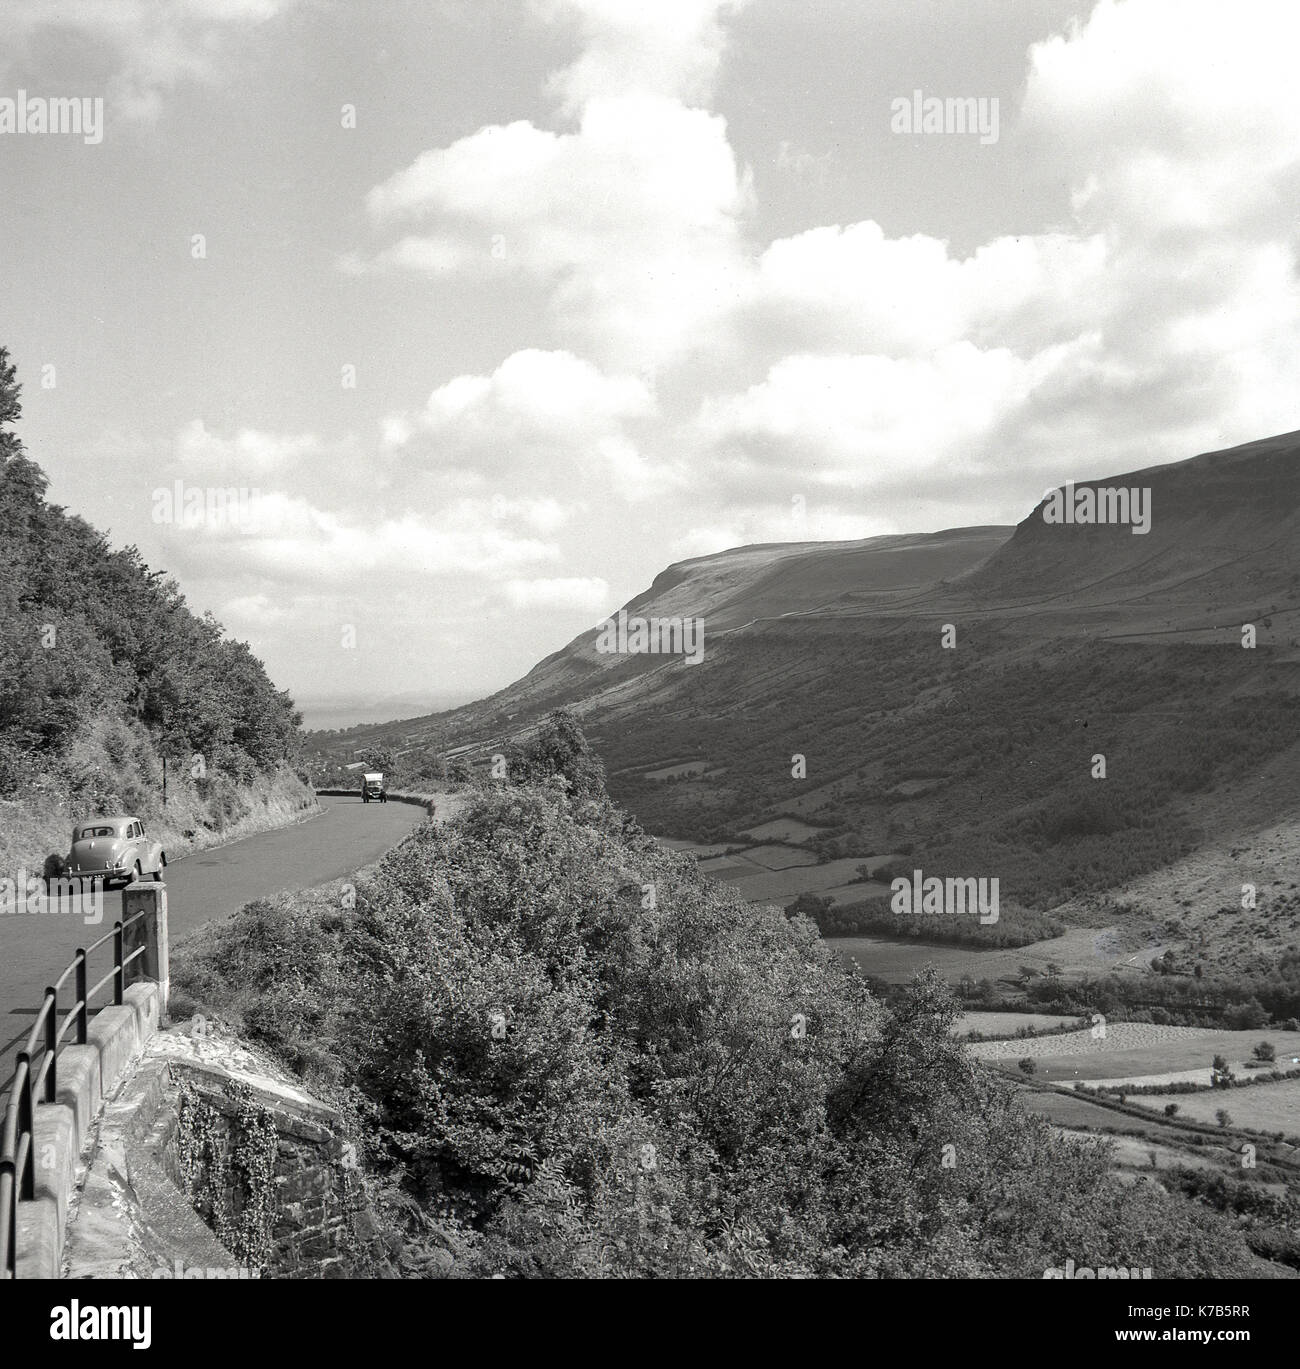 Années 1950, historique, une voiture d'Austin de construction britannique garée sur le côté d'une route de campagne, s'arrêta pour admirer la vue sur les montagnes de Morne, et les vallées environnantes à Co Down, Irlande du Nord . La chaîne de montagnes en granit des montagnes de Morne est la plus haute du pays et offre des vues spectaculaires. Banque D'Images